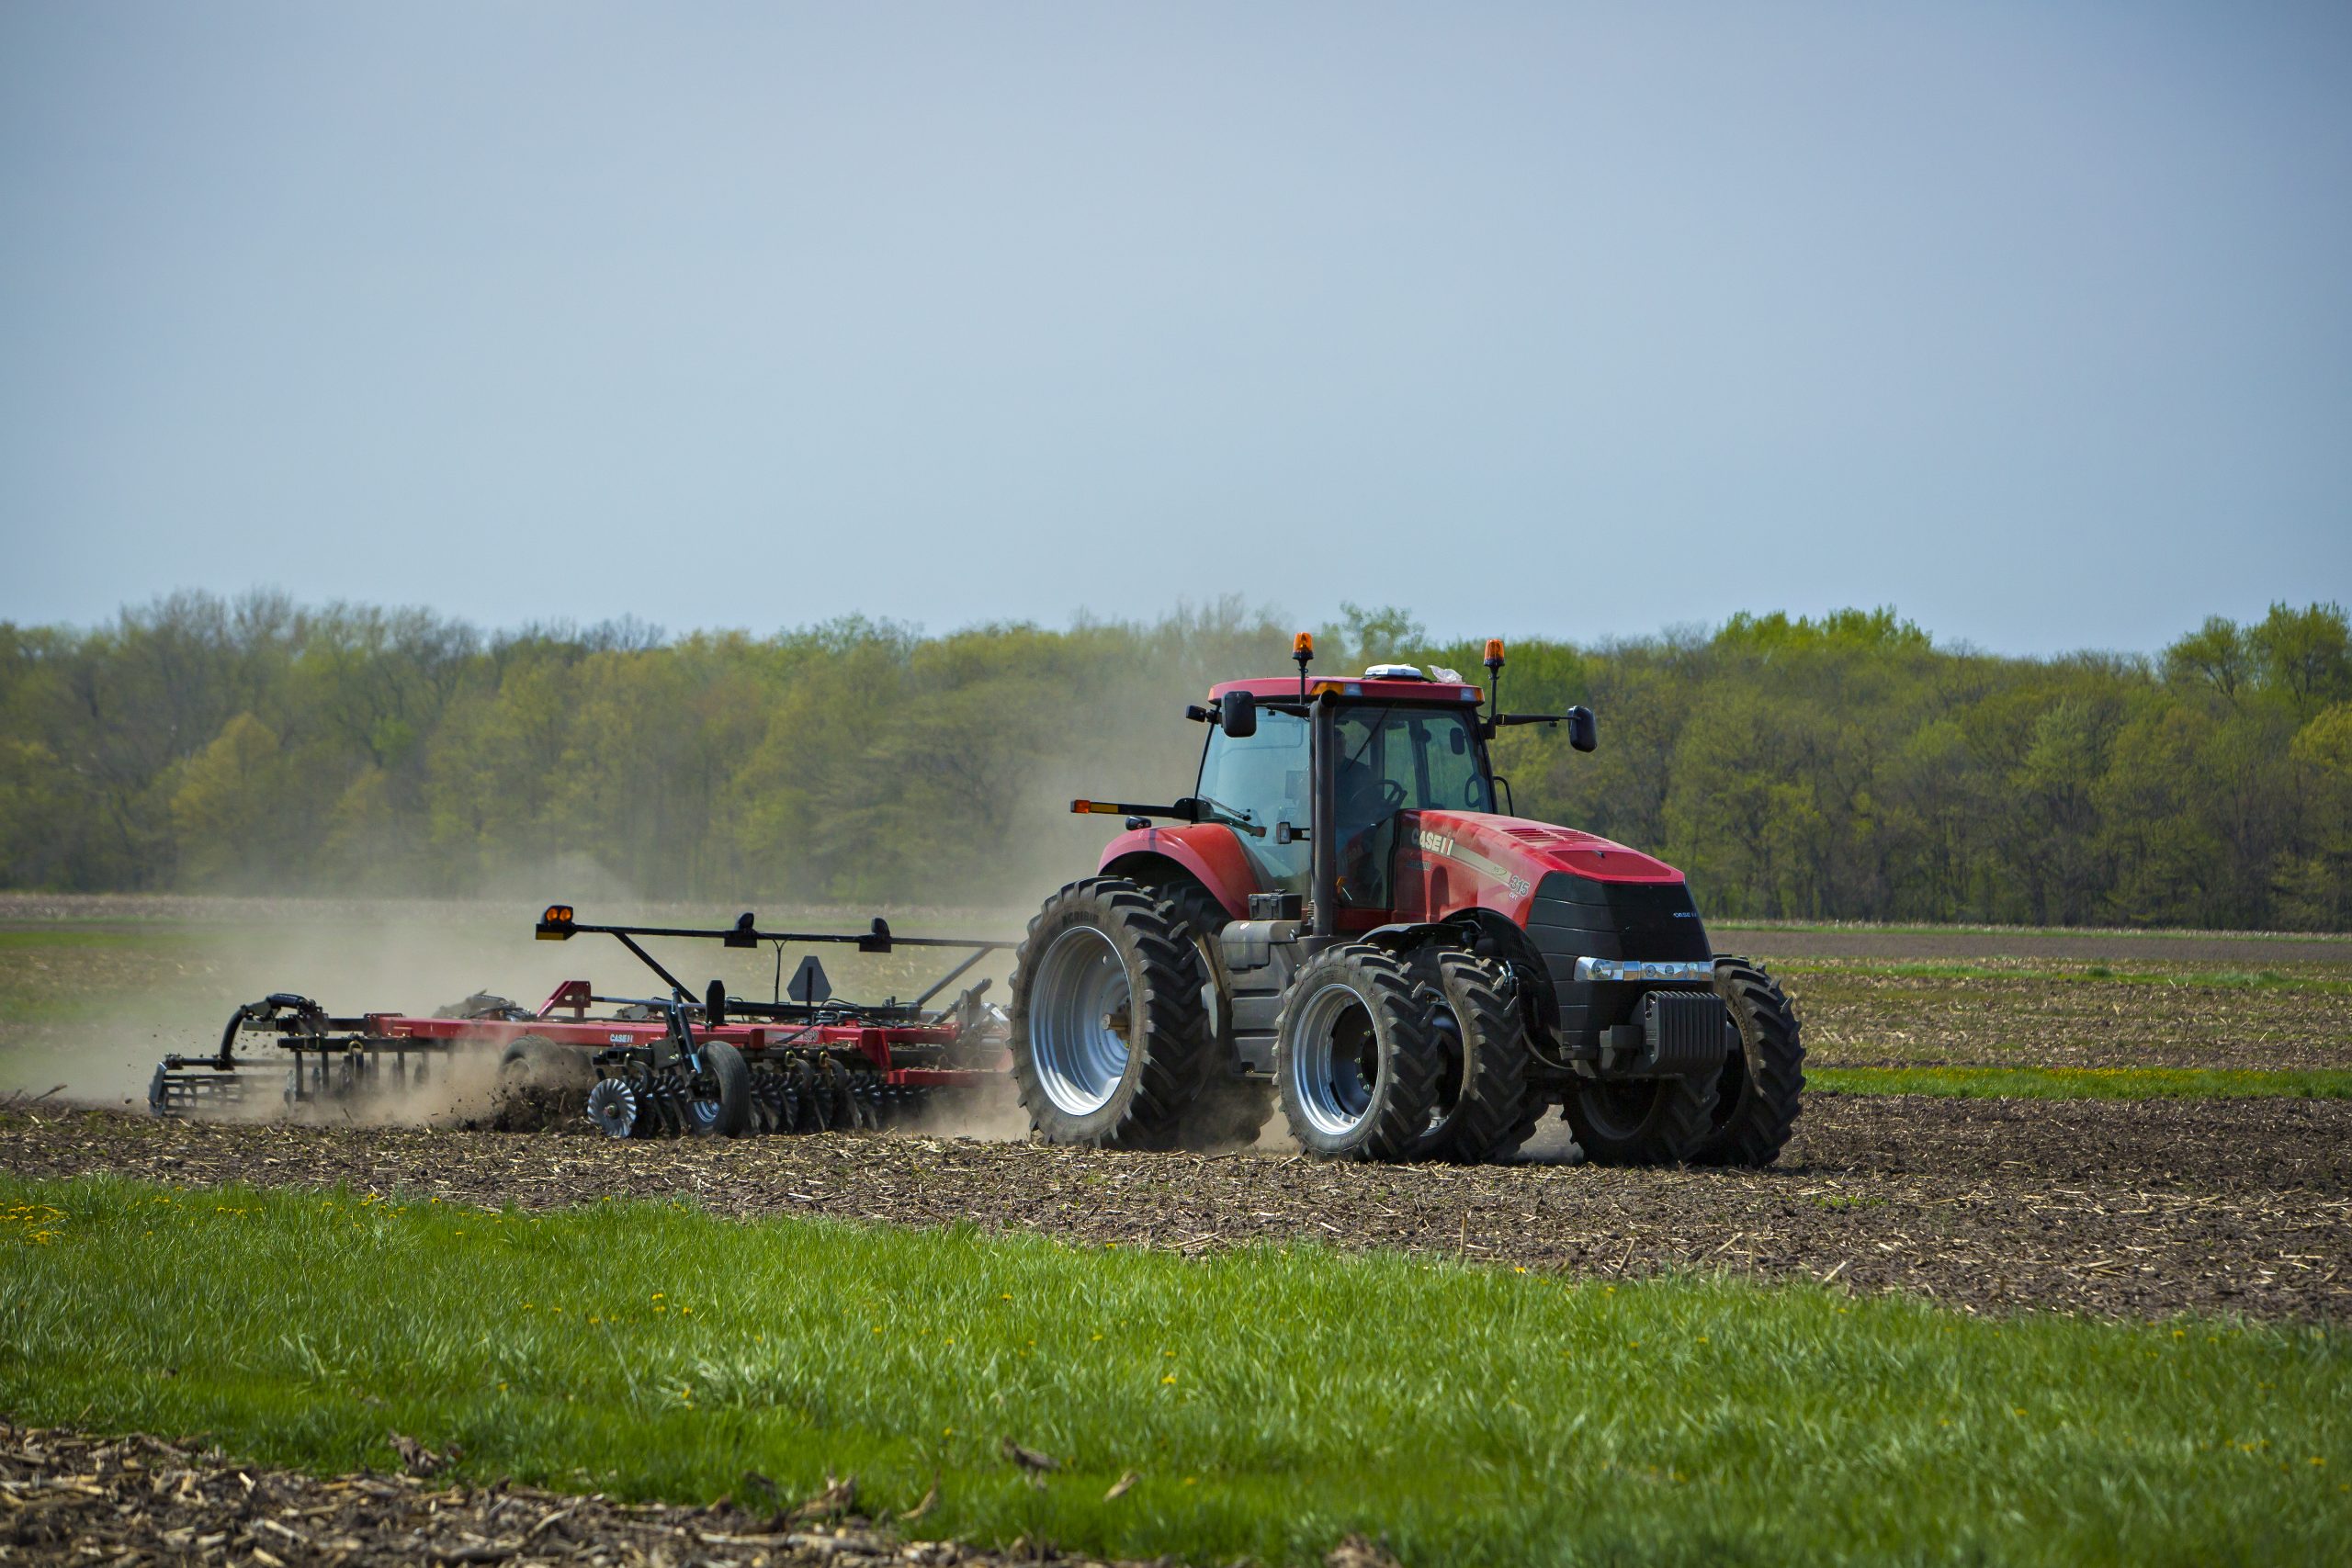 Tractor tilling soil in field